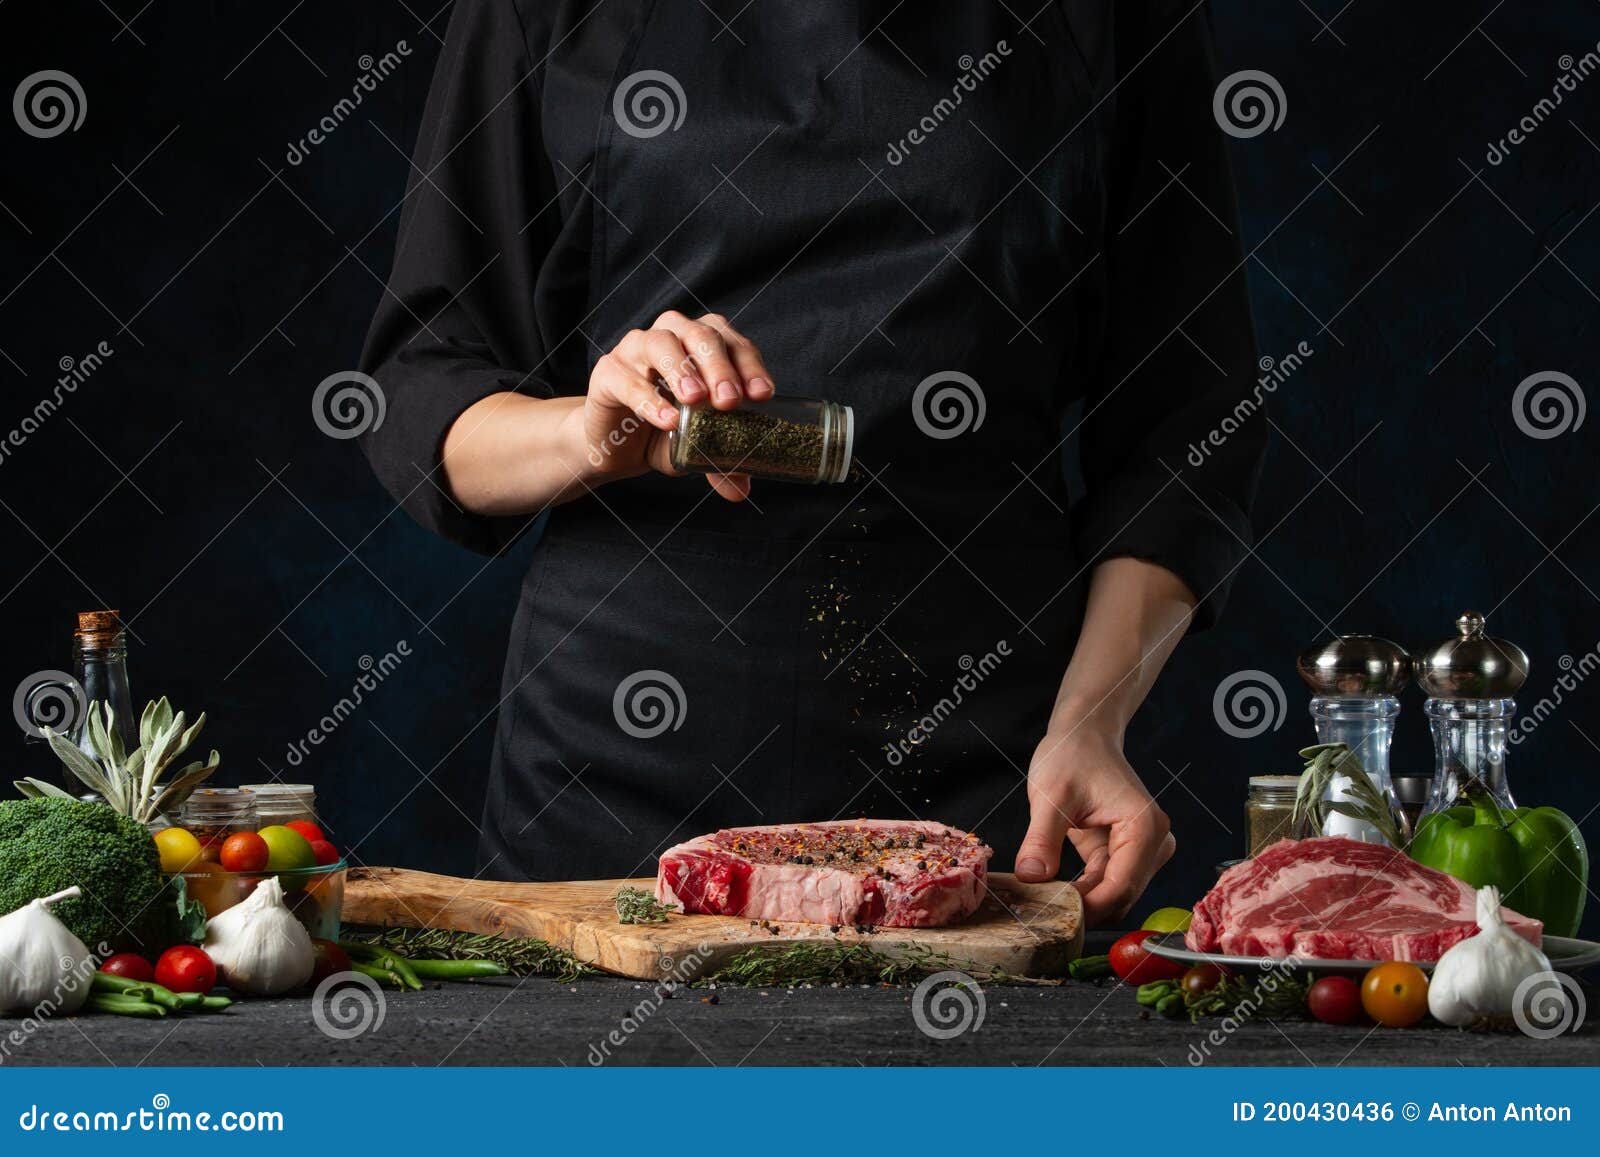 Parrilla para asar carnes con leñas Stock Photo